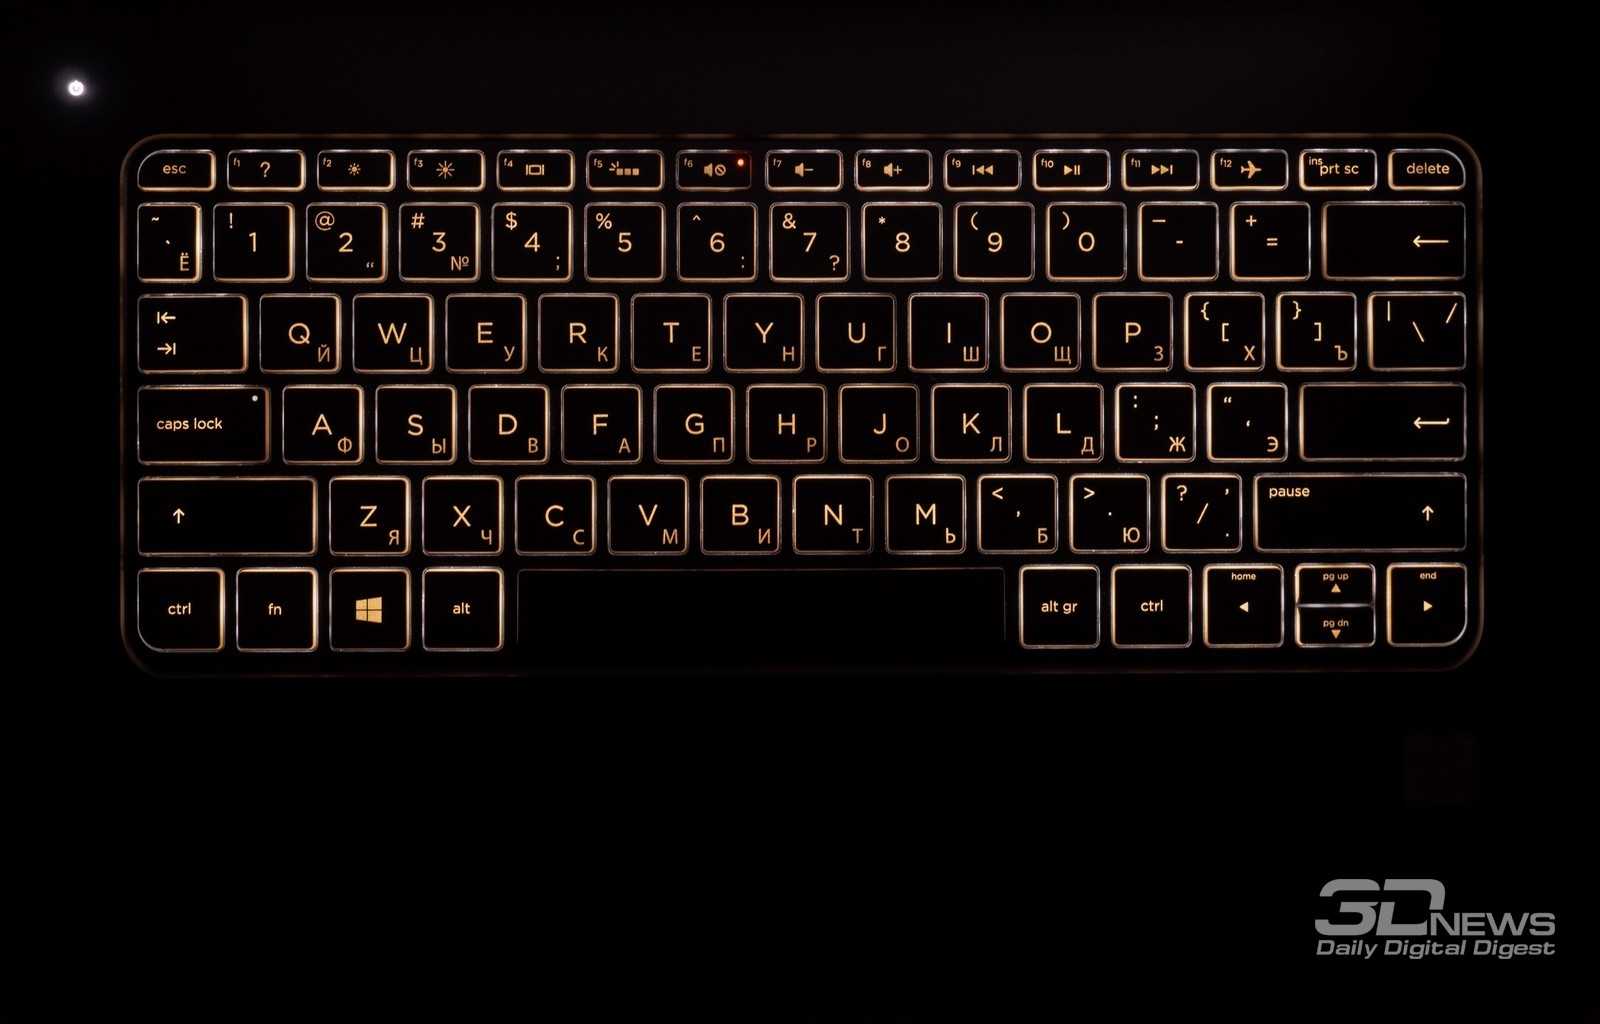 Обзор hp spectre x360 15 — универсальный и производительный планшетный-ноутбук